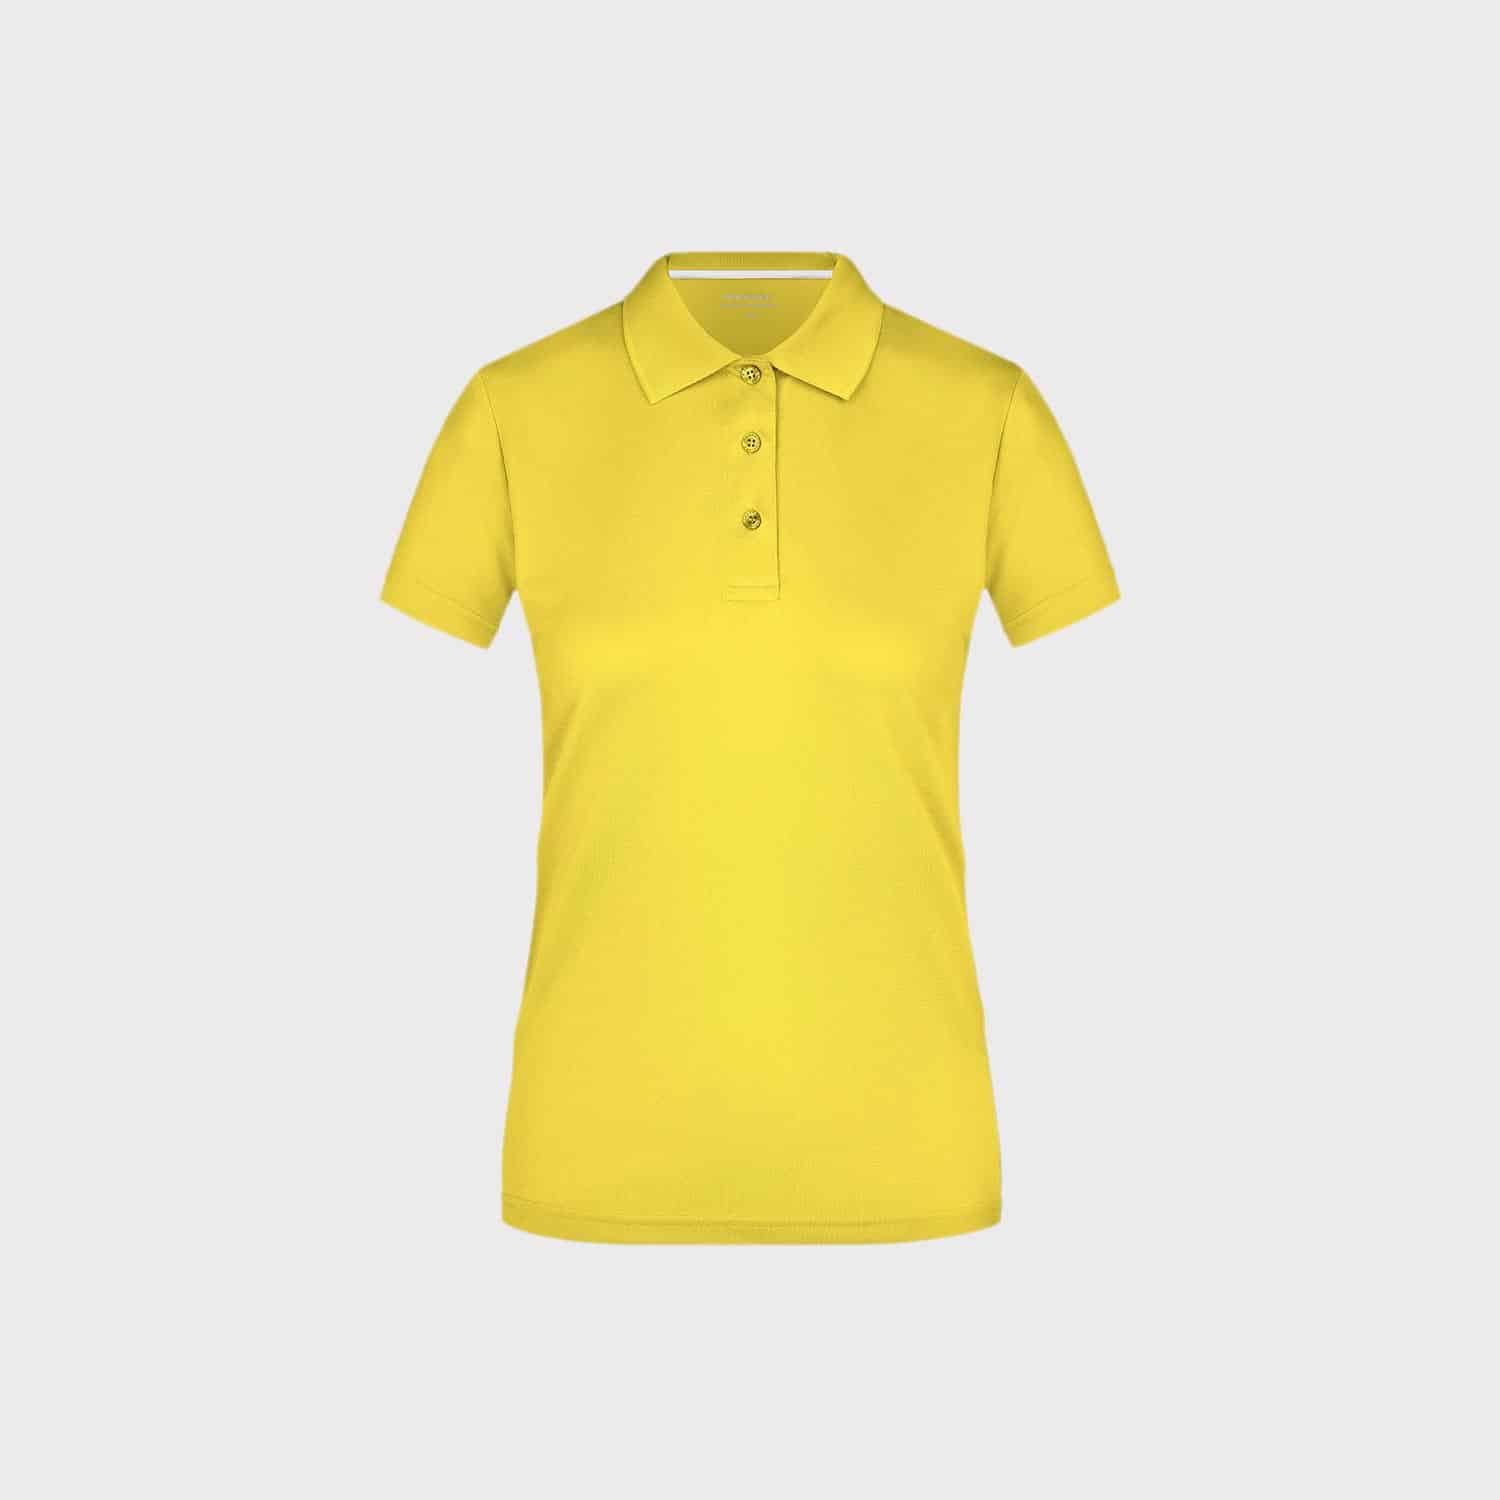 sportshirt-polo-t-tshirt-damen-yellow-kaufen-besticken_stickmanufaktur